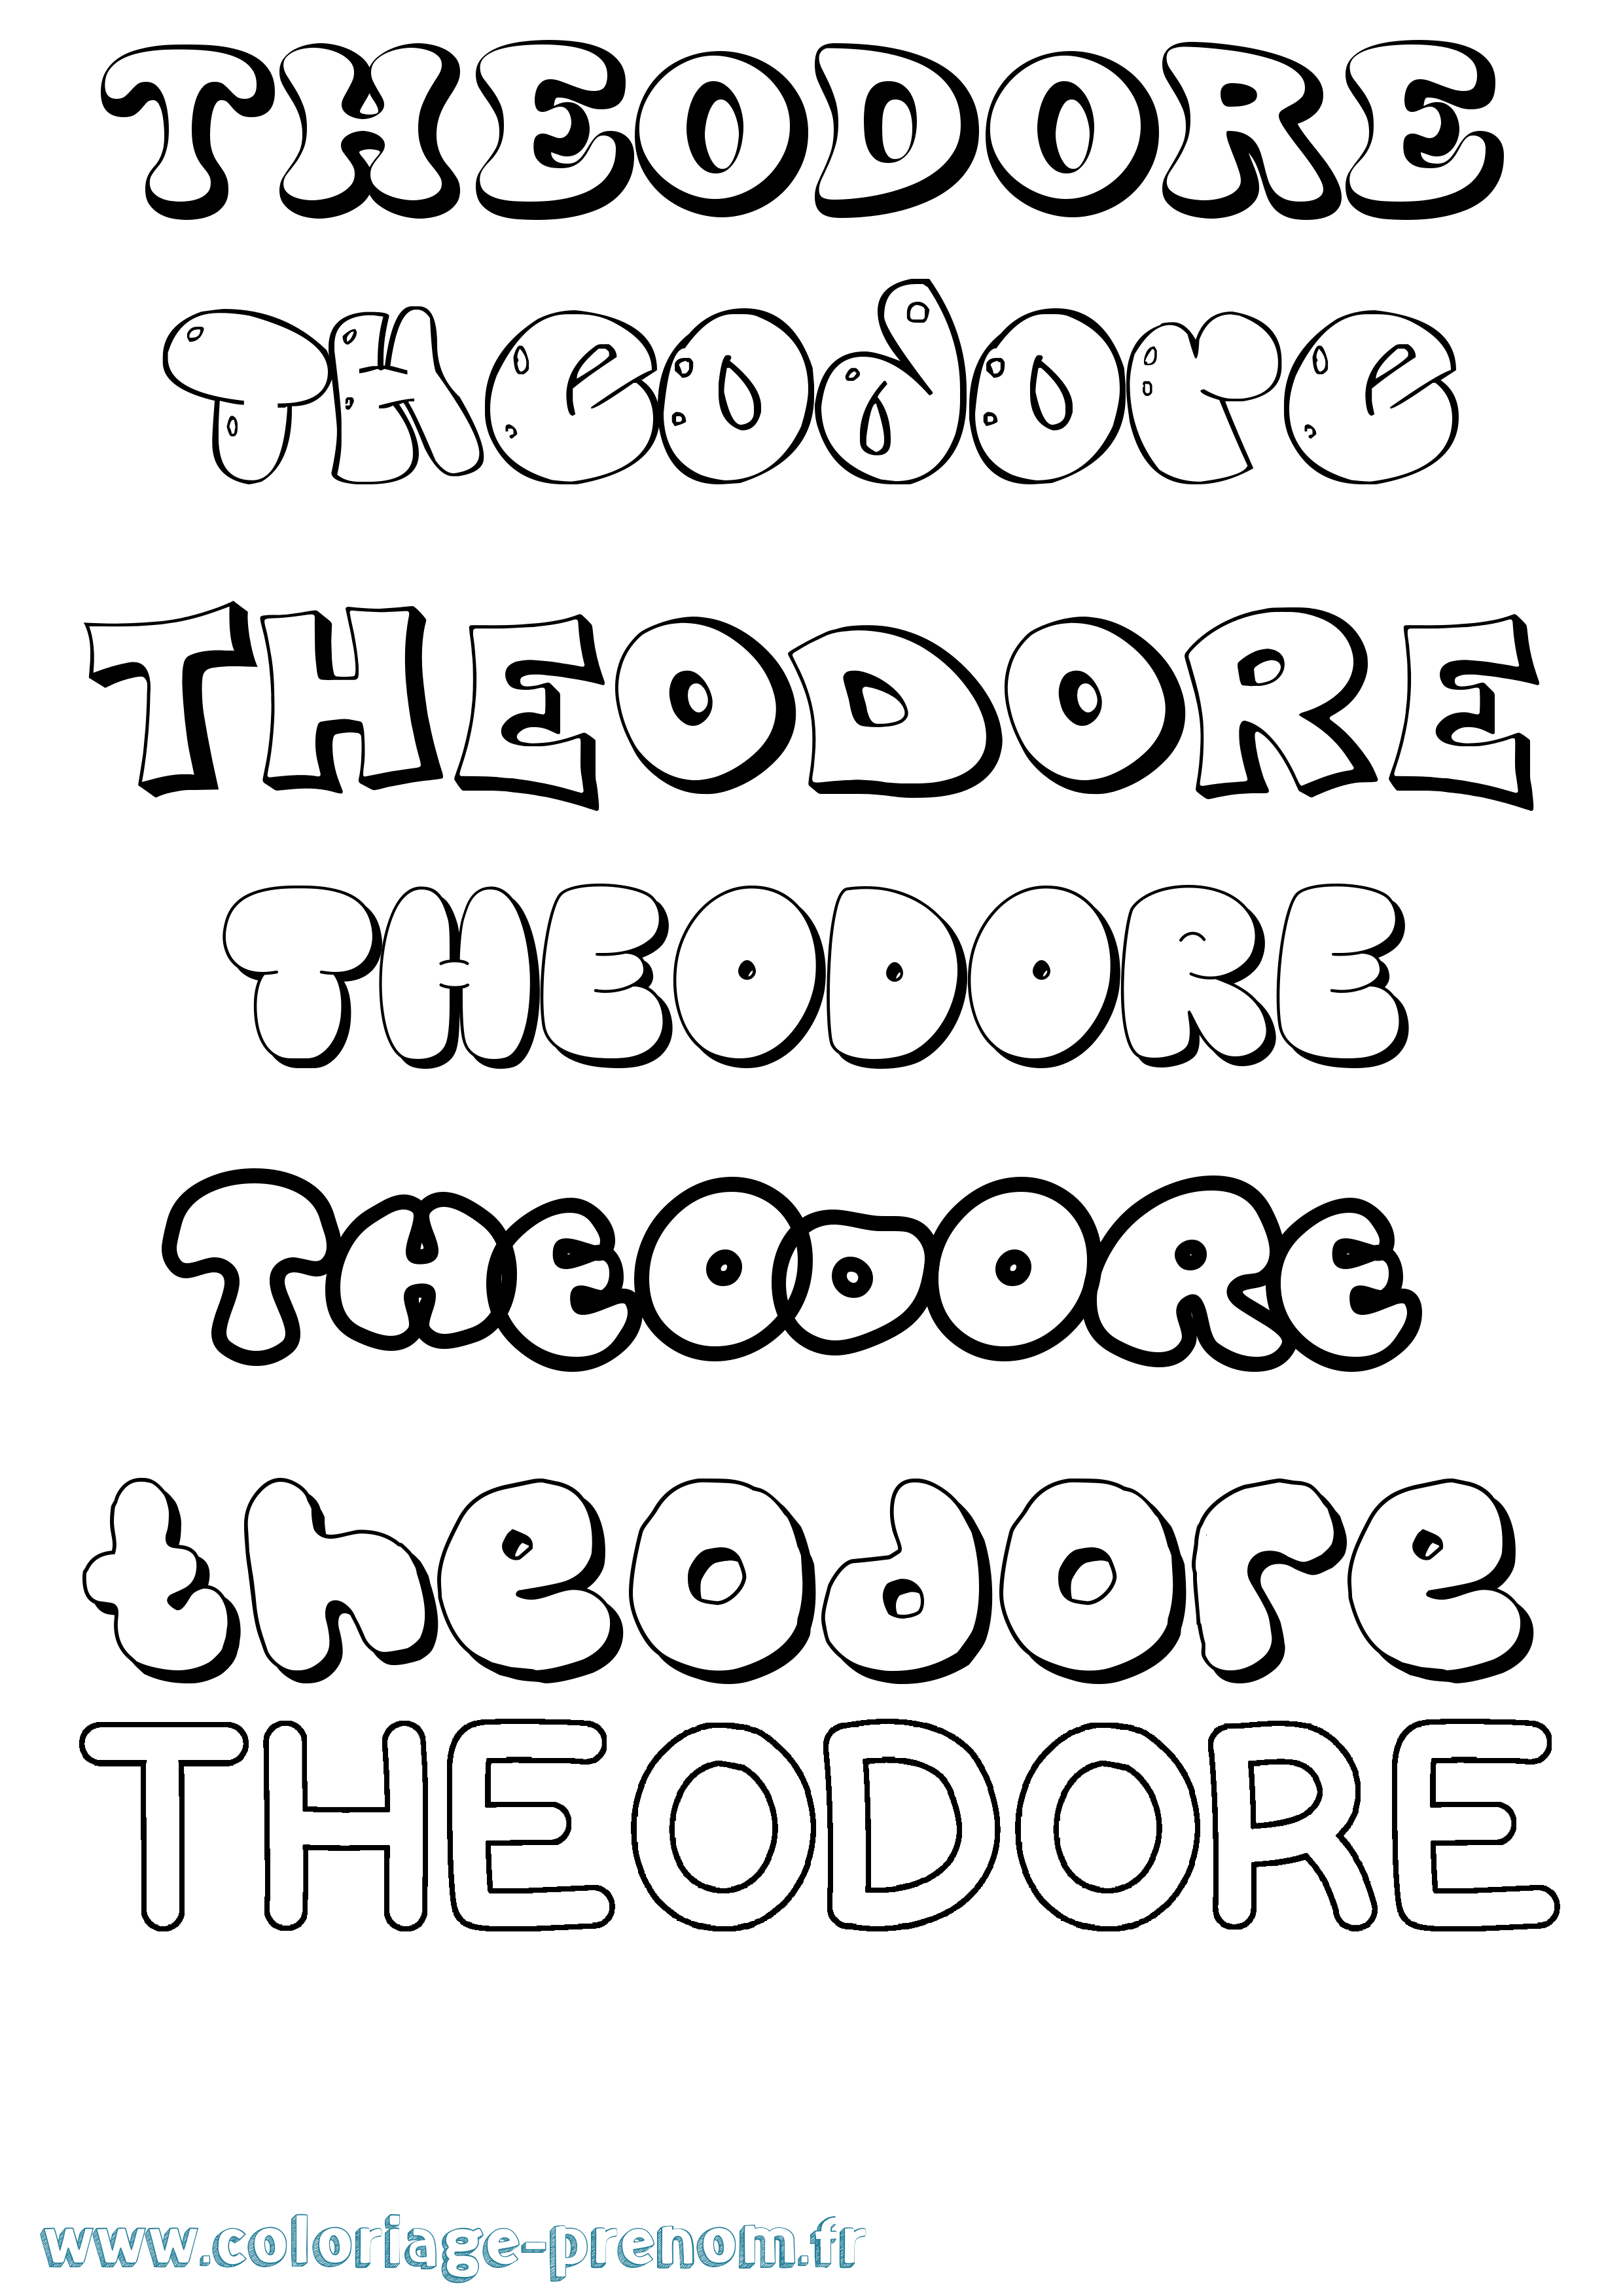 Coloriage prénom Theodore Bubble